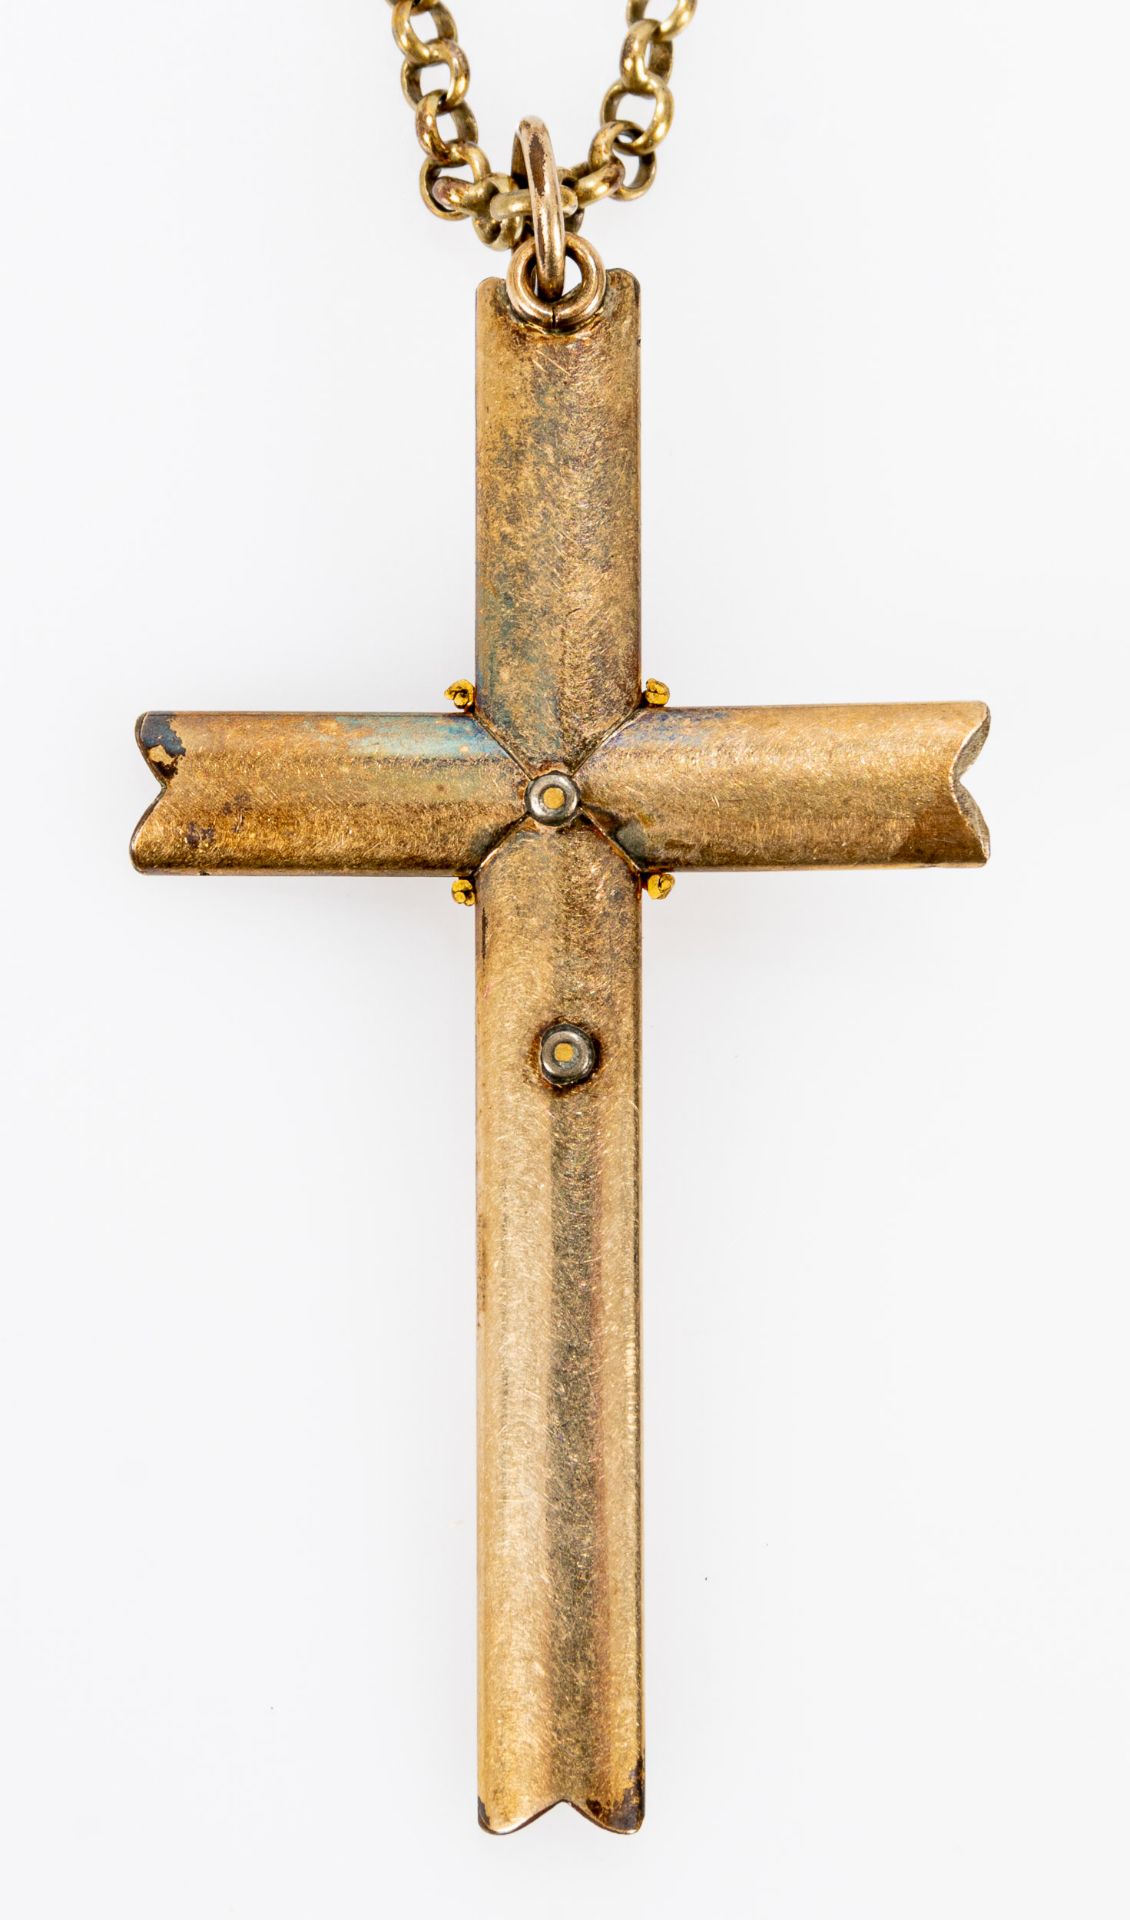 Gliederhalskette mit Kreuzanhänger (Länge ca. 51 mm), Kettenlänge ca. 40 cm, vergoldete Metalle. - Image 3 of 3